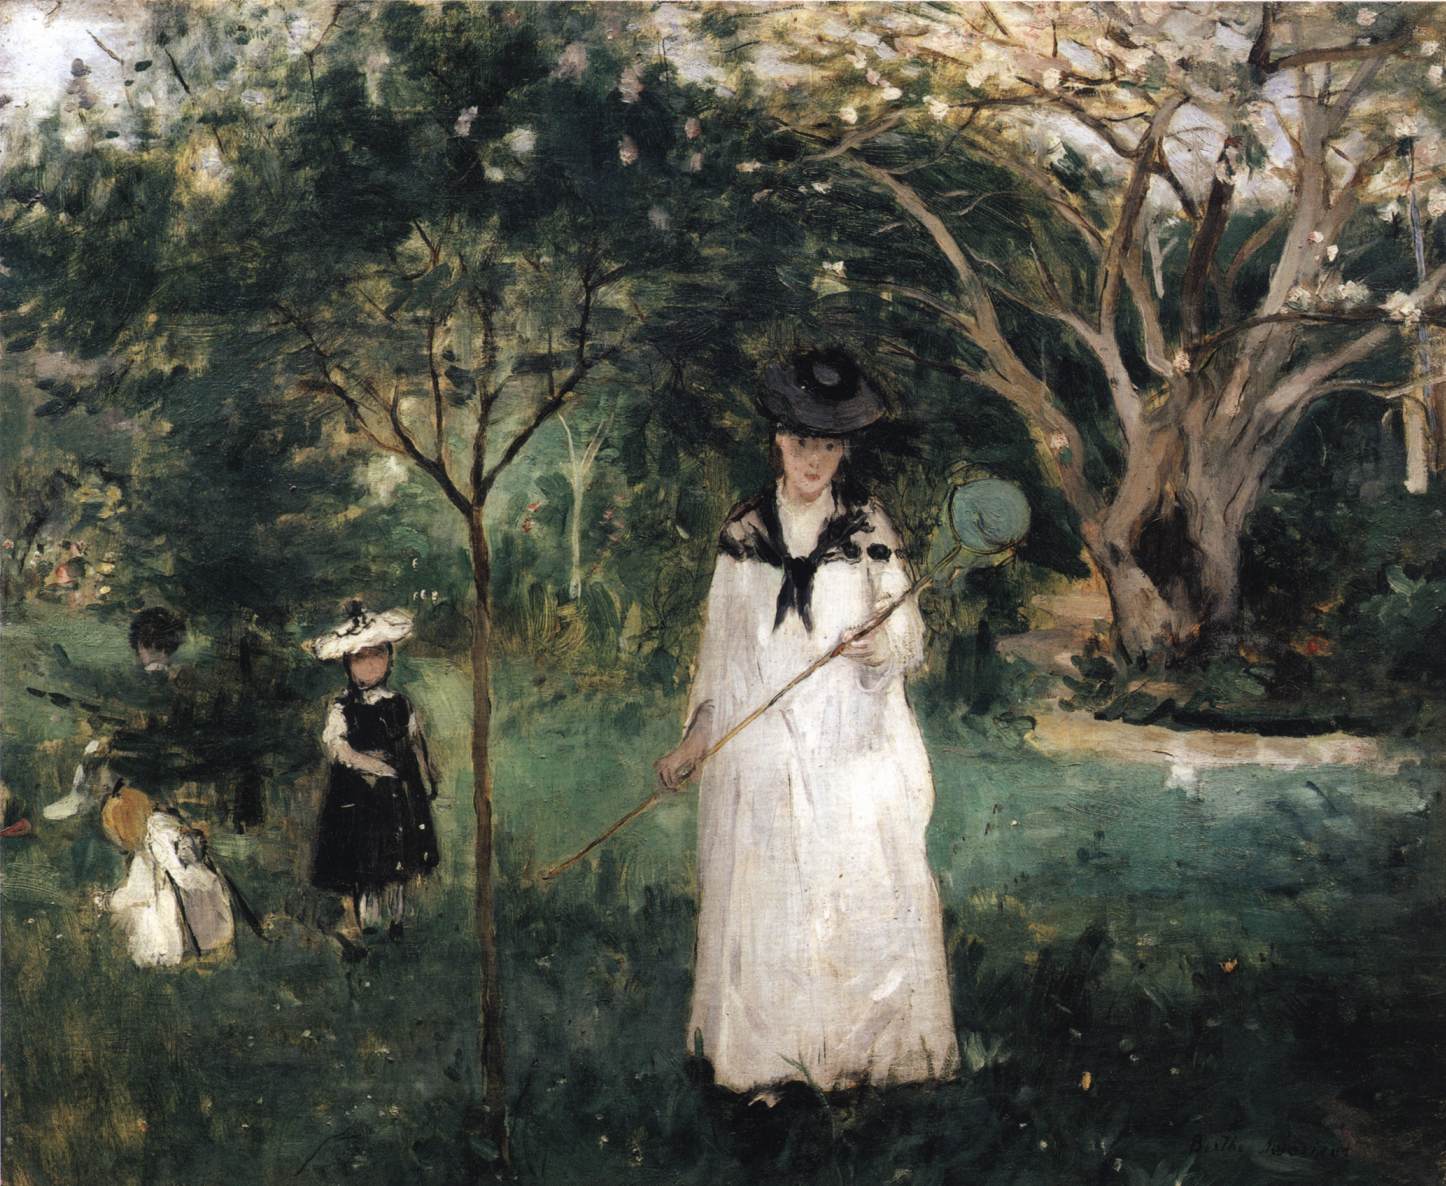 La chasse aux papillons by Berthe Morisot - 1874 Musée d'Orsay